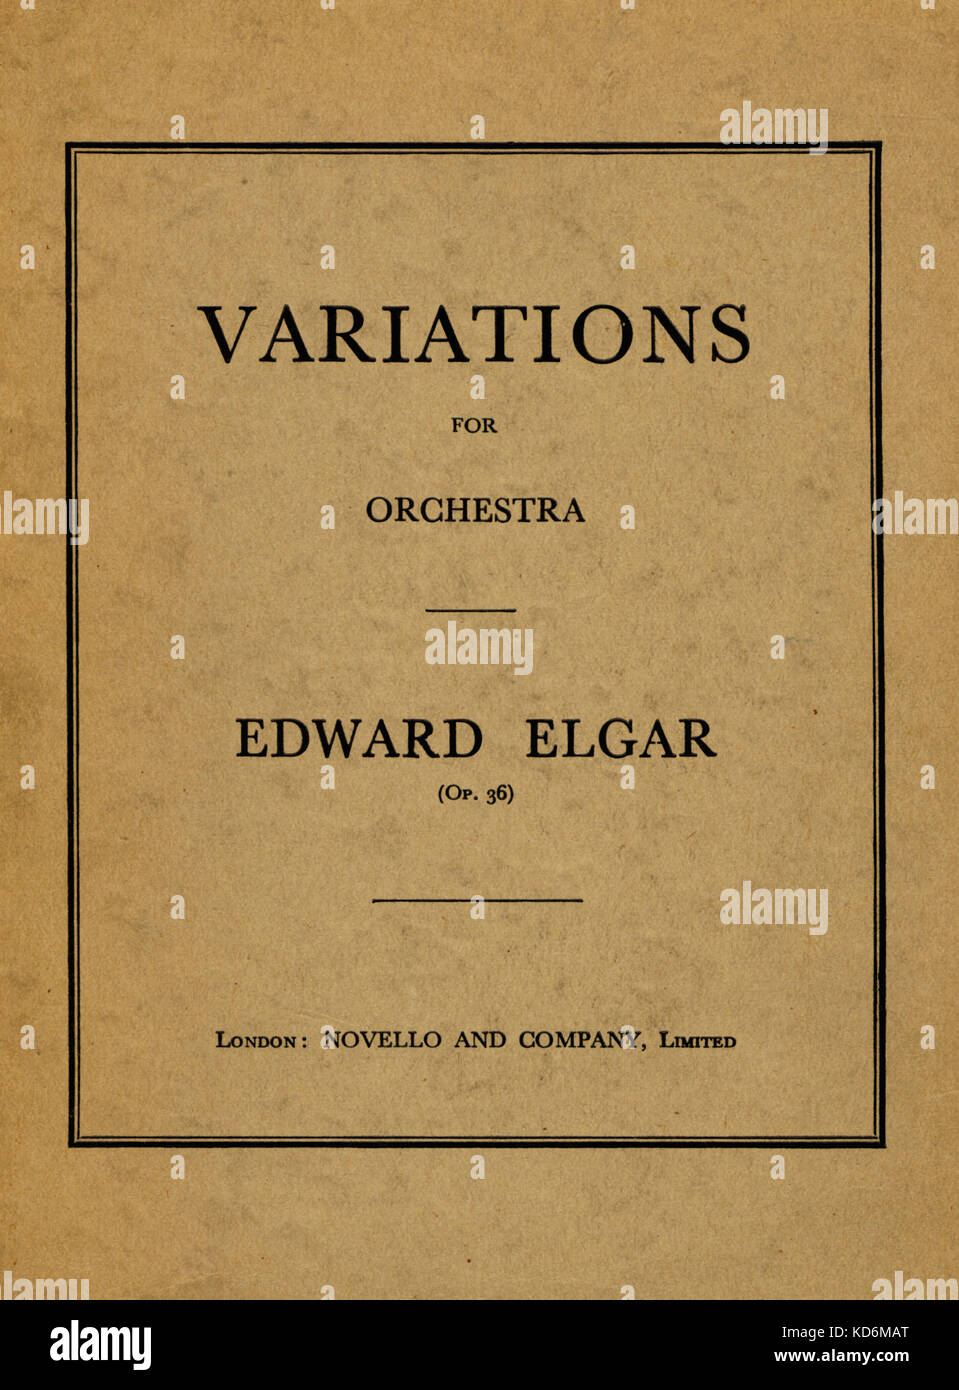 Edward Elgar - Titelseite der Score für Variationen über ein eigenes Thema, Enigma, Opus 36. Englische Komponist, 2. Juni 1857 - 23. Februar 1934. Enigma Variationen Novello und Company, Limited, London, 1899 Stockfoto